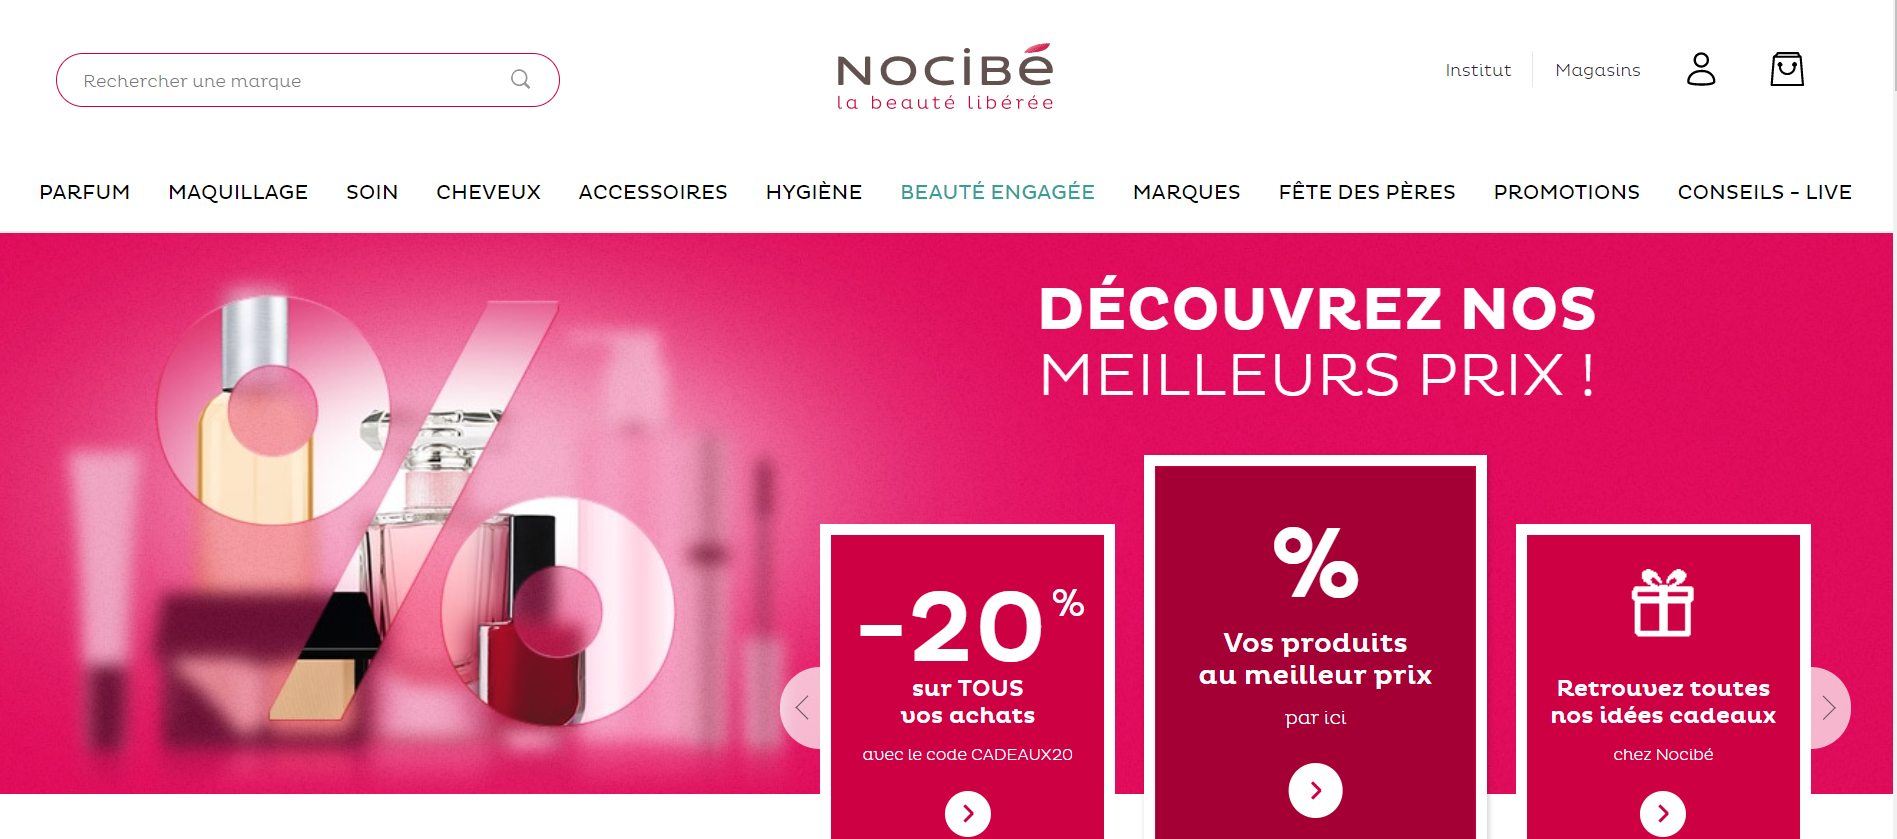 法国美妆集团 Groupe Bogart 收购香水美妆连锁零售商 Nocibé 41家在法国的门店